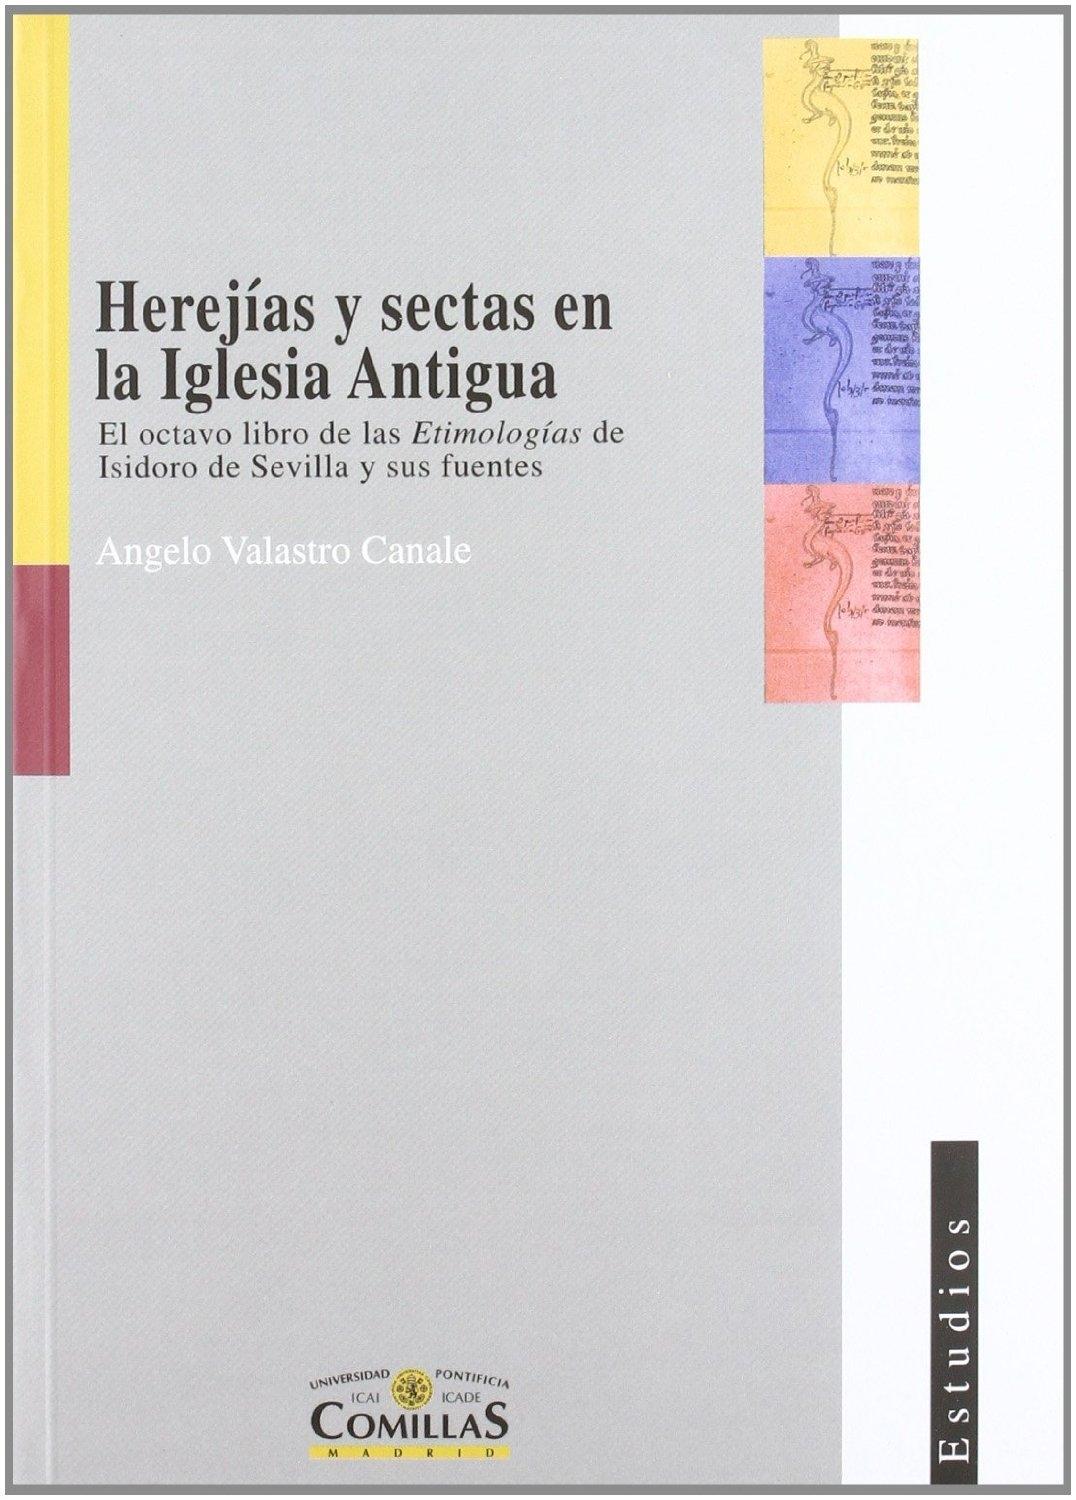 Herejías y sectas en la Iglesia Antigua "El octavo libro de las Etimologías de Isidoro de Sevilla..."